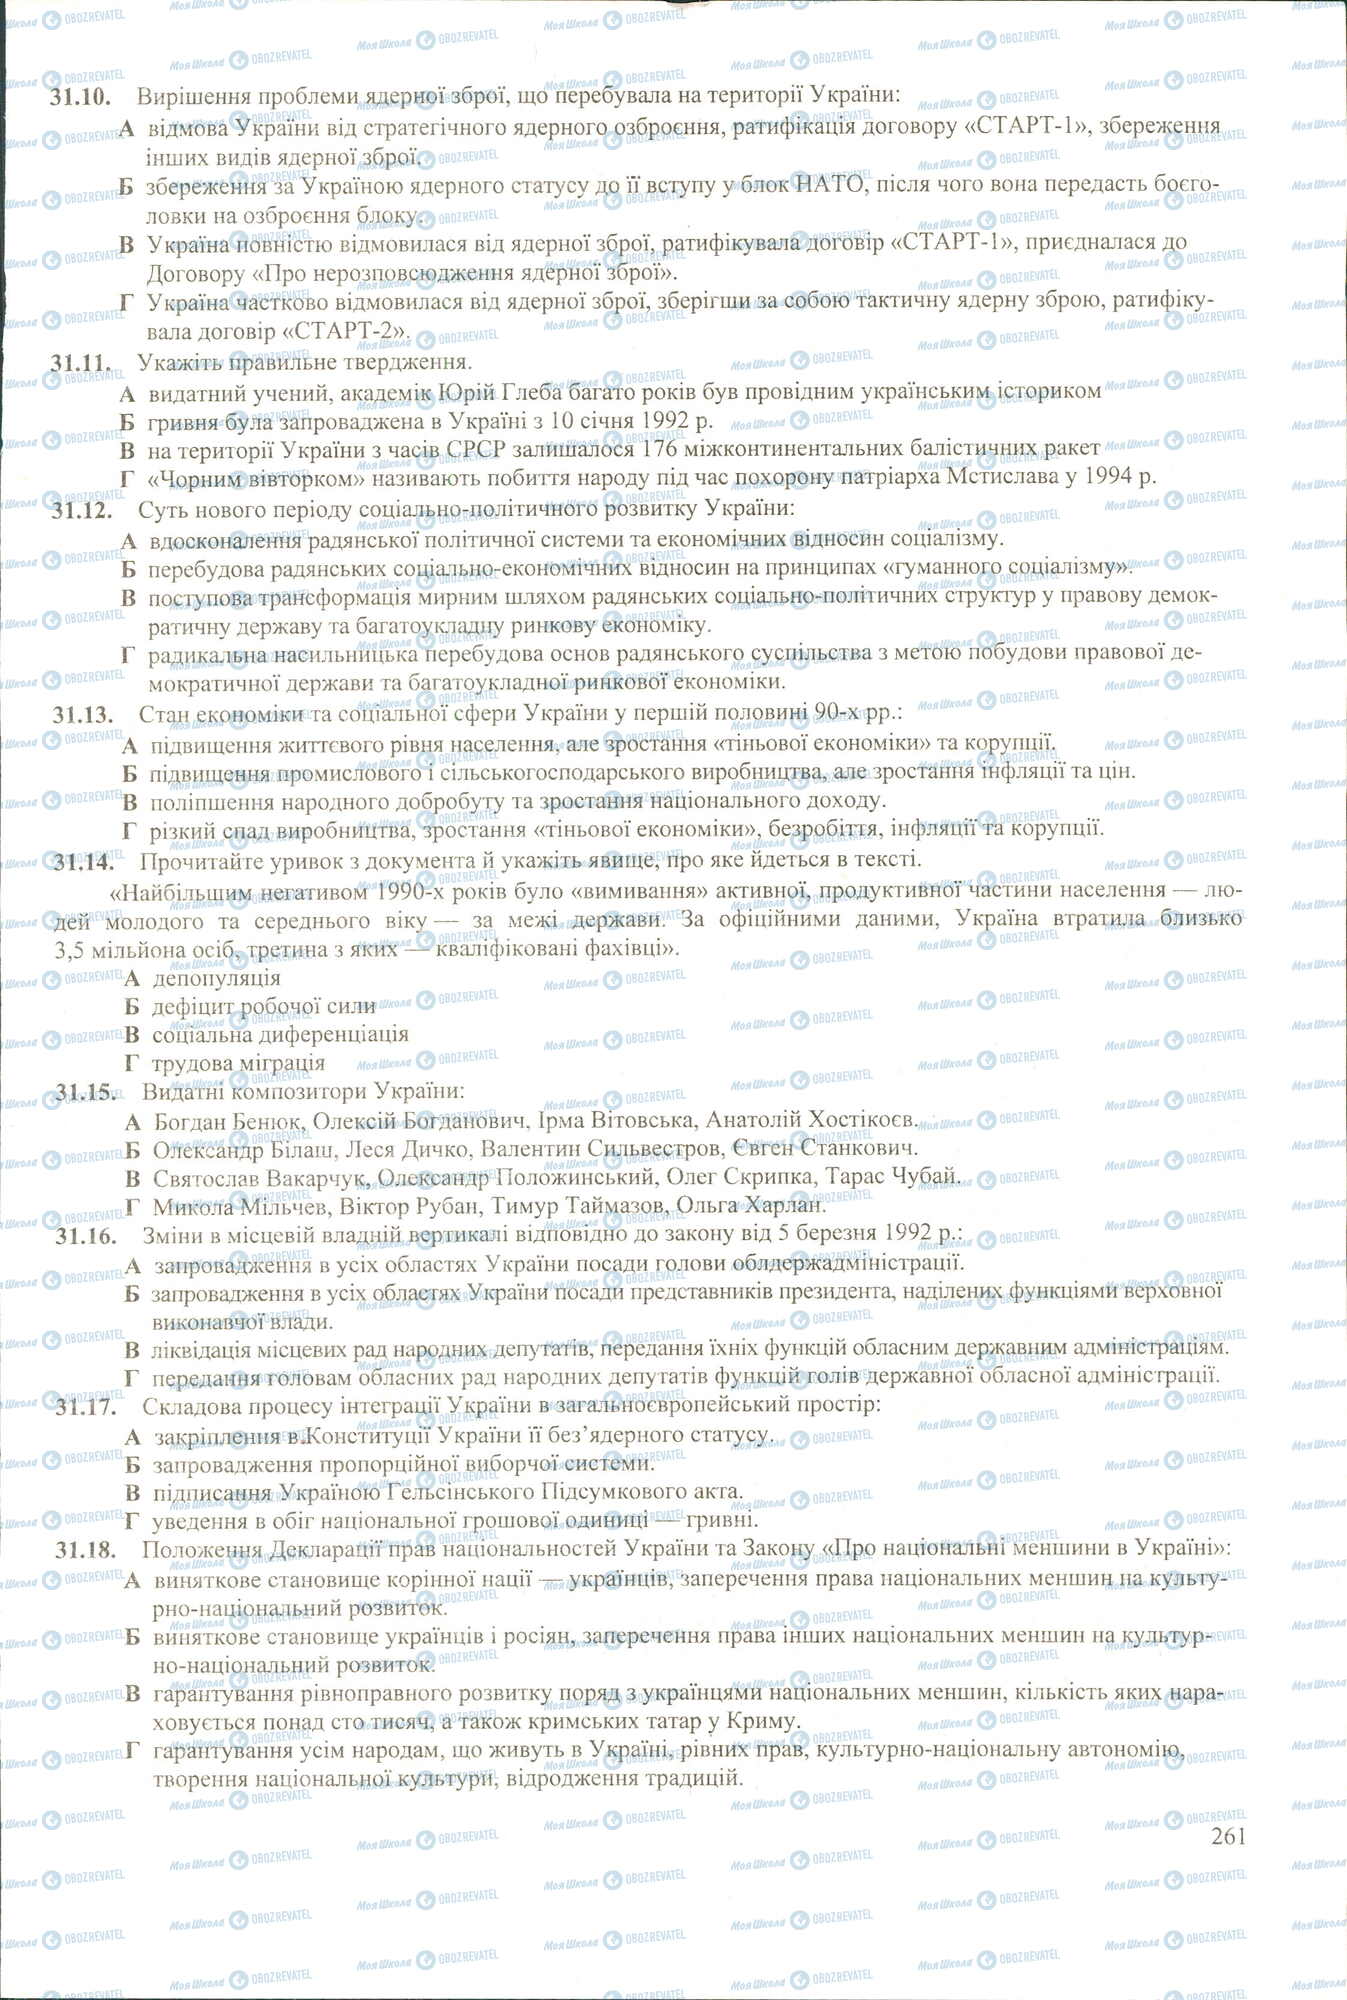 ЗНО История Украины 11 класс страница 10-18